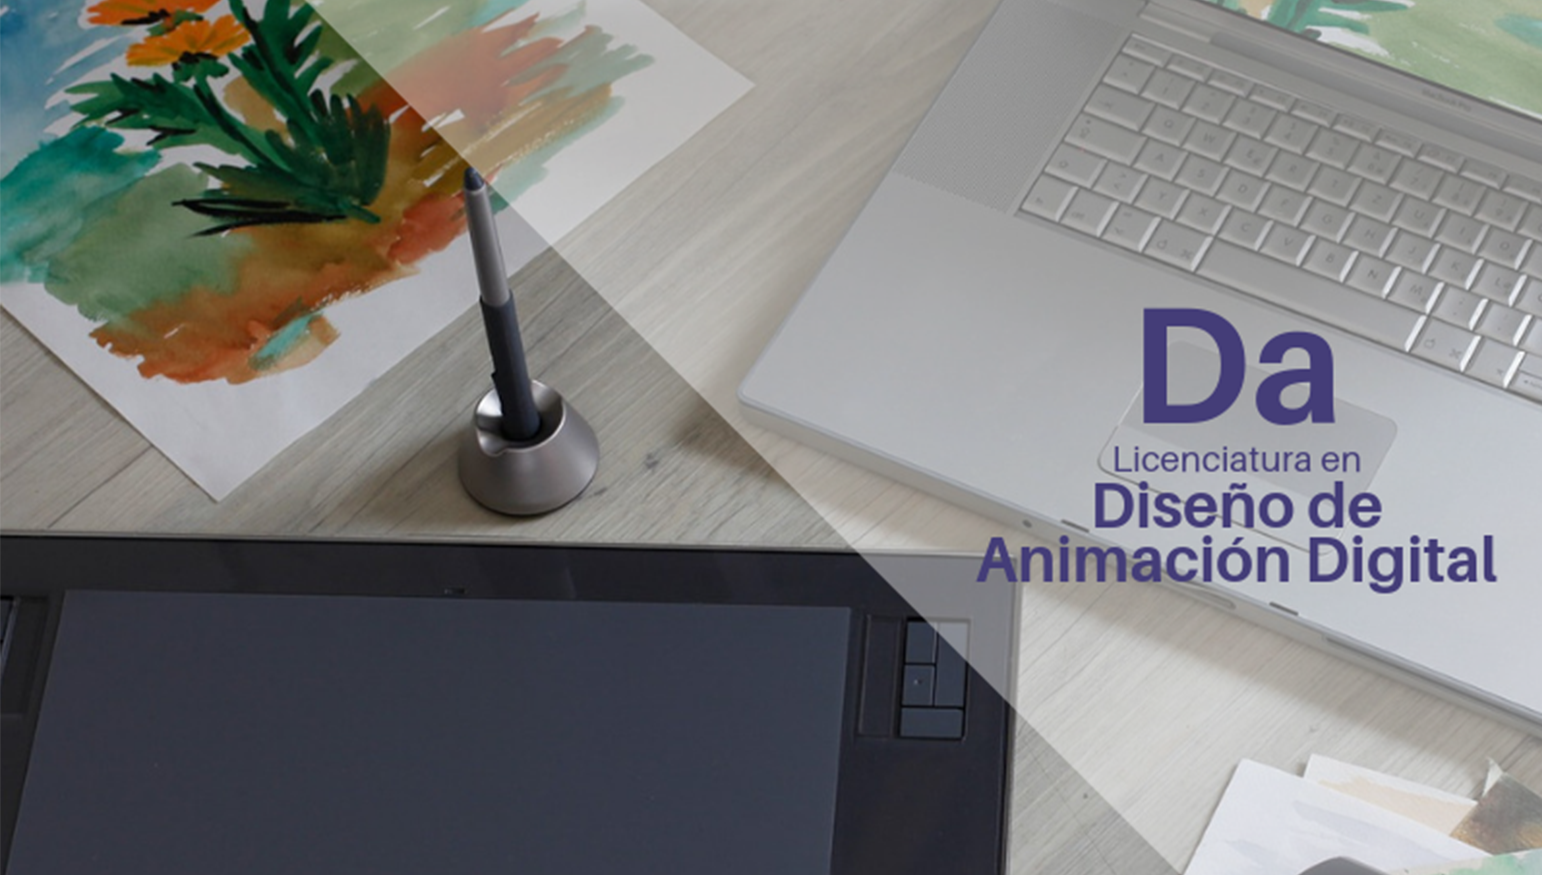 Diseño de Animación Digital